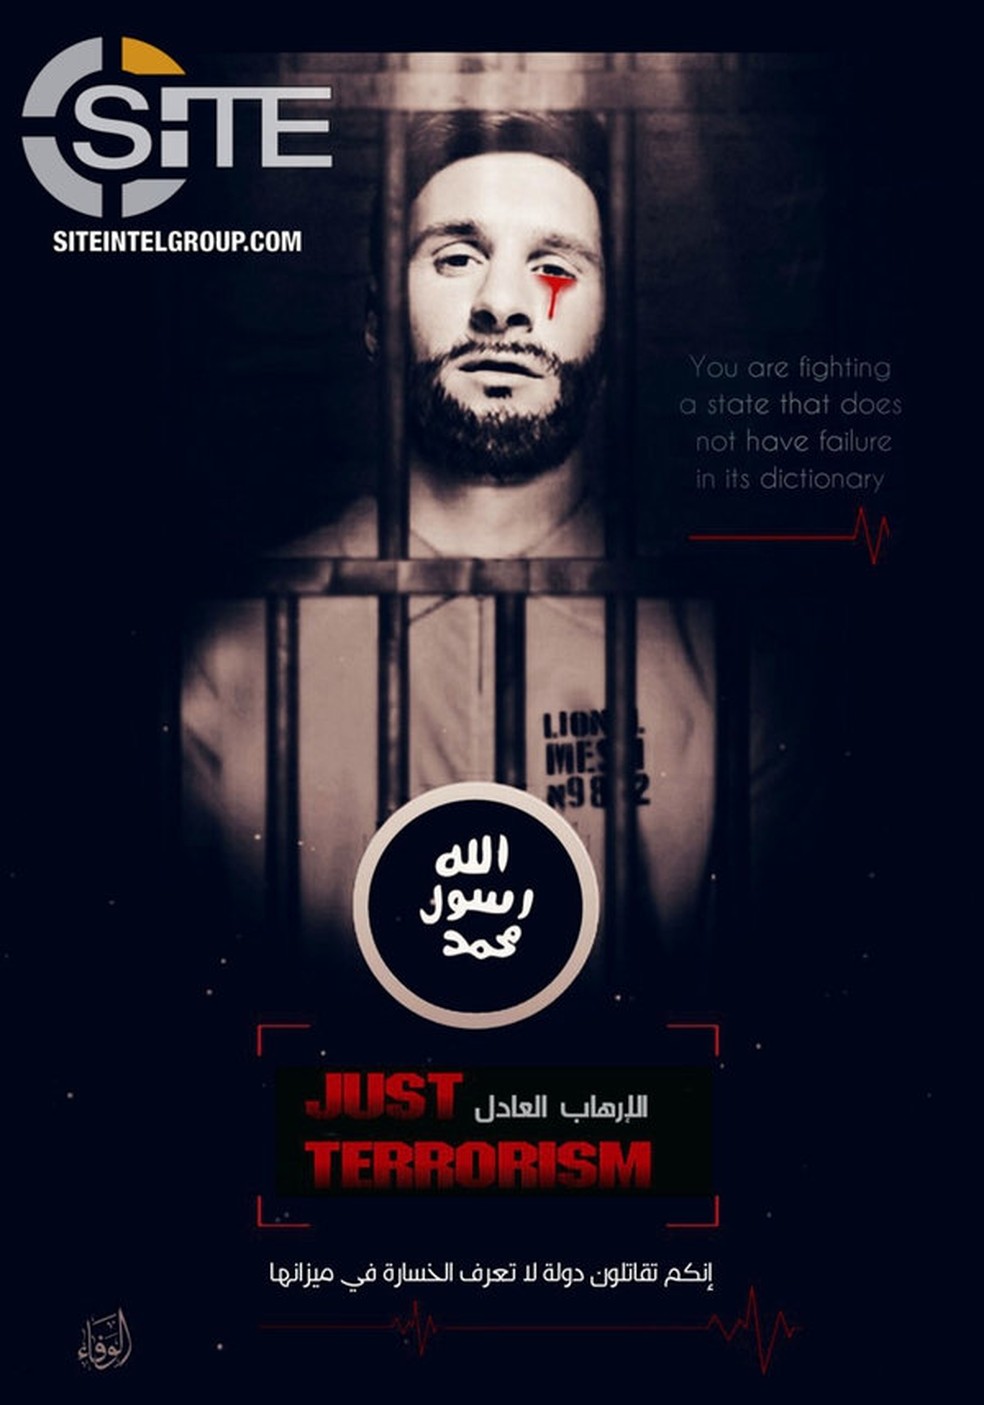 Outro pôster feito pelo Estado Islâmico contra o jogador Messi